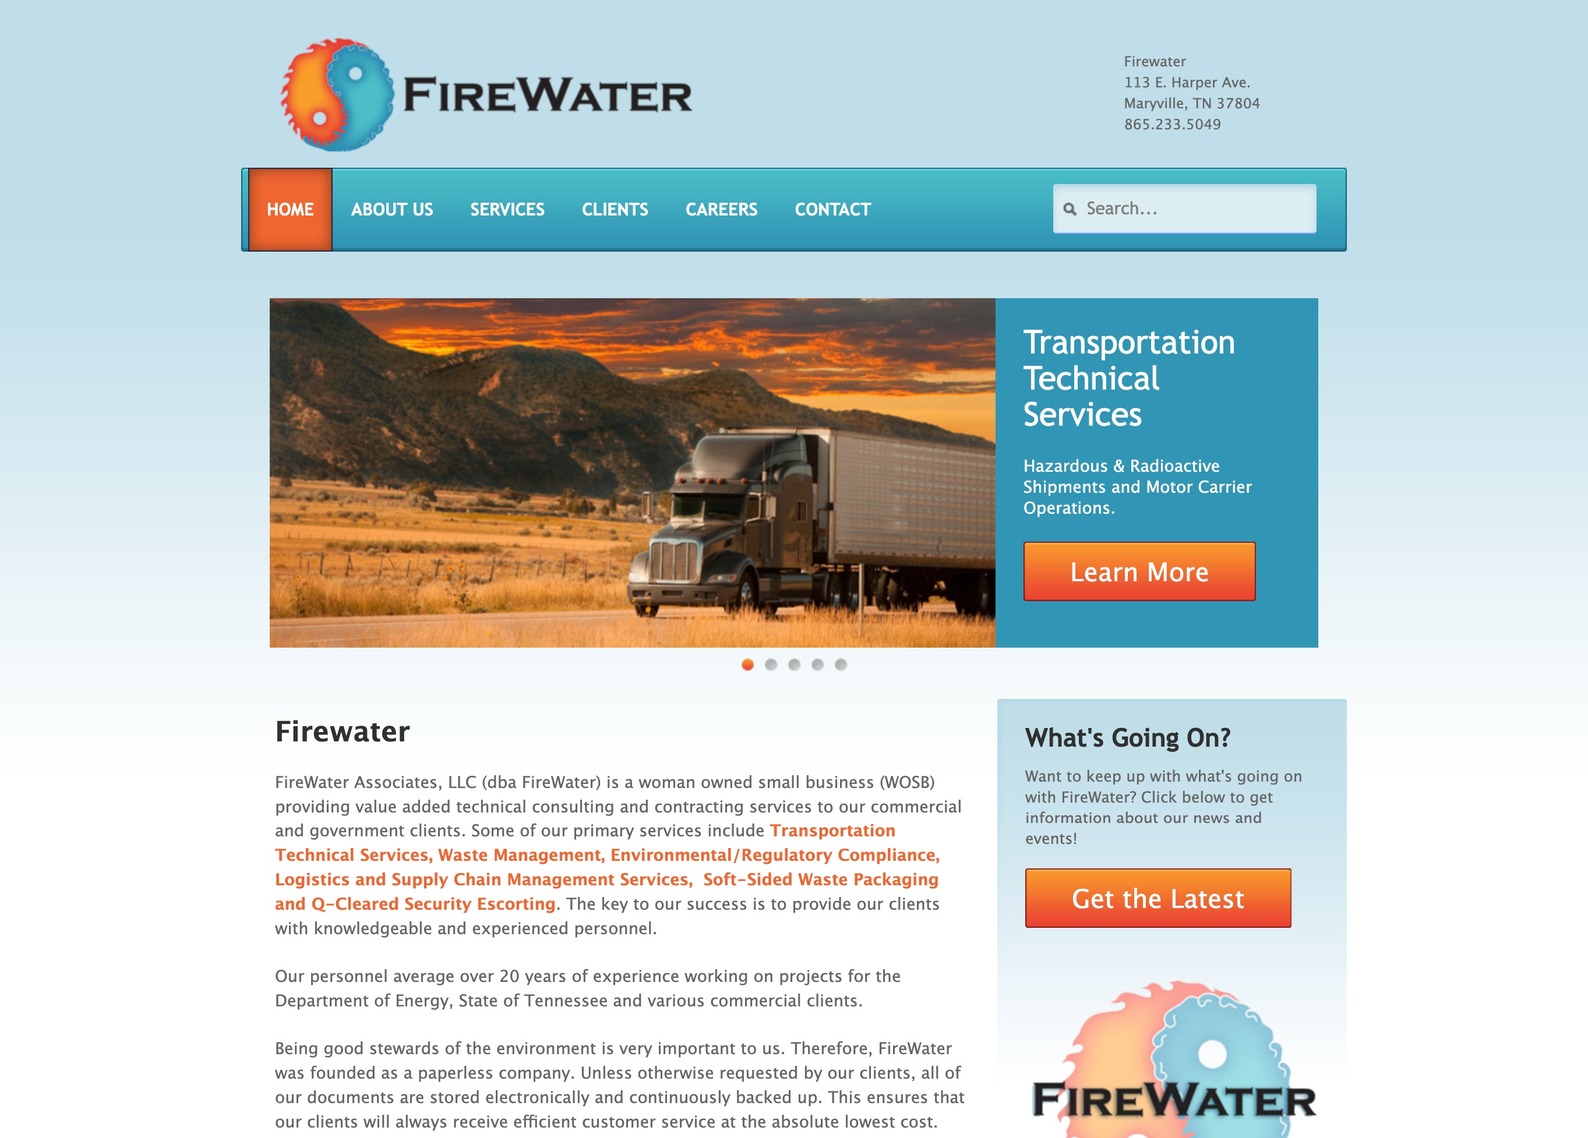 Firewater Associates